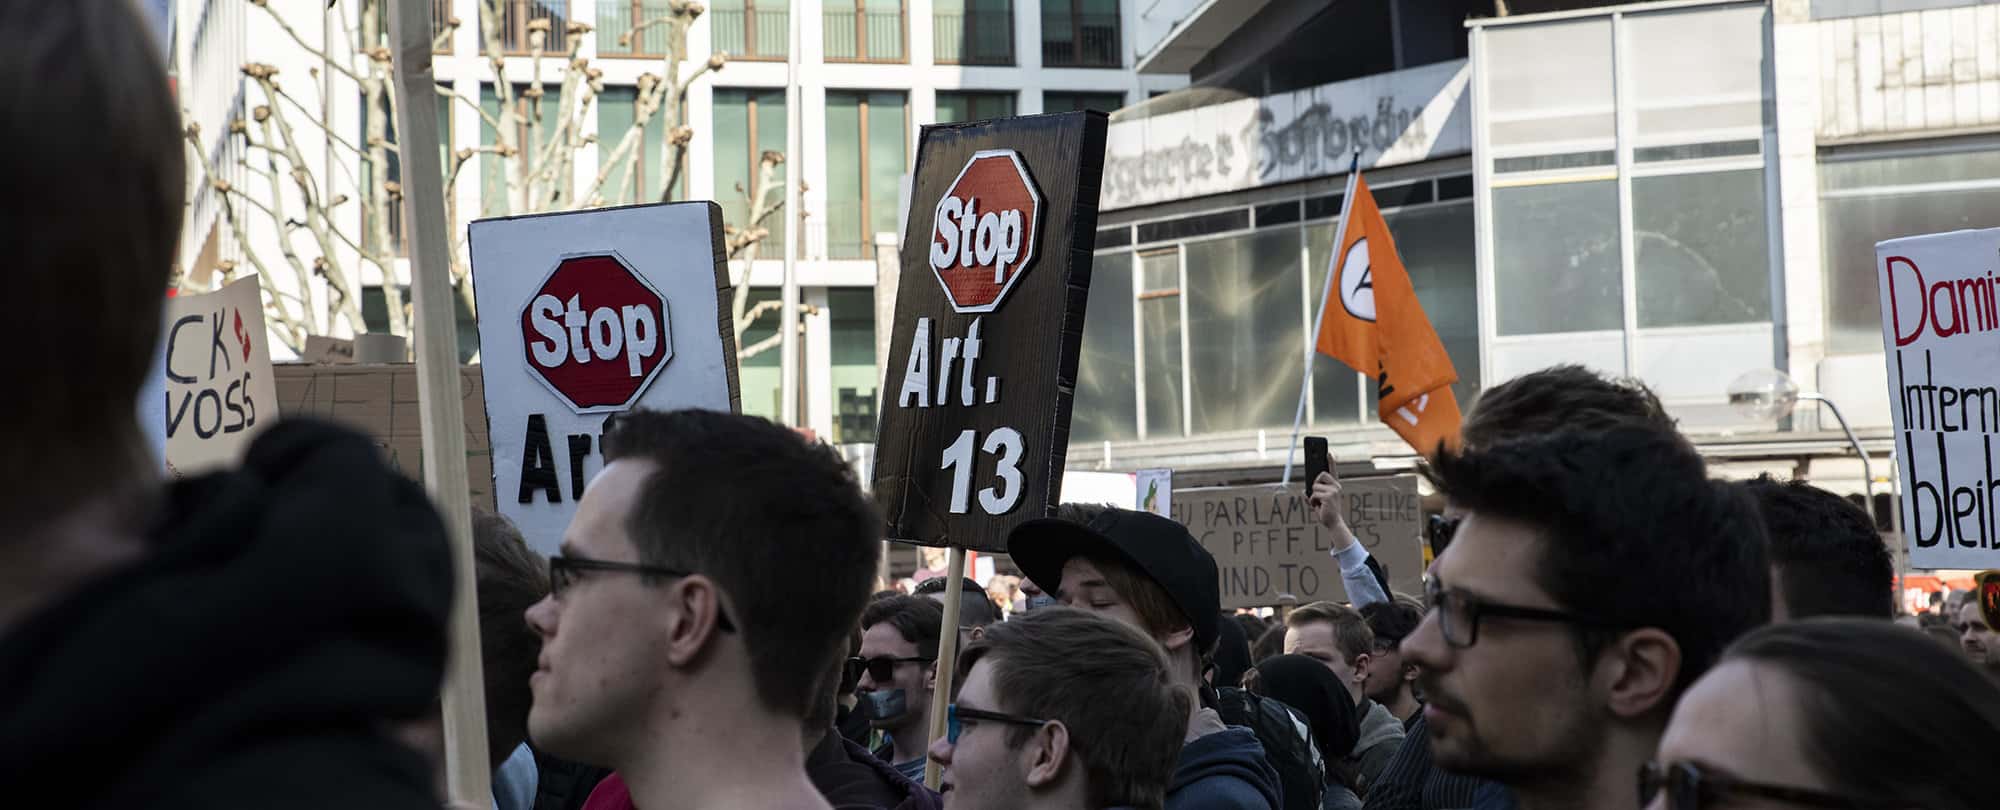 Erneute Demonstration in Stuttgart für ein freies Internet – SaveYourInternet